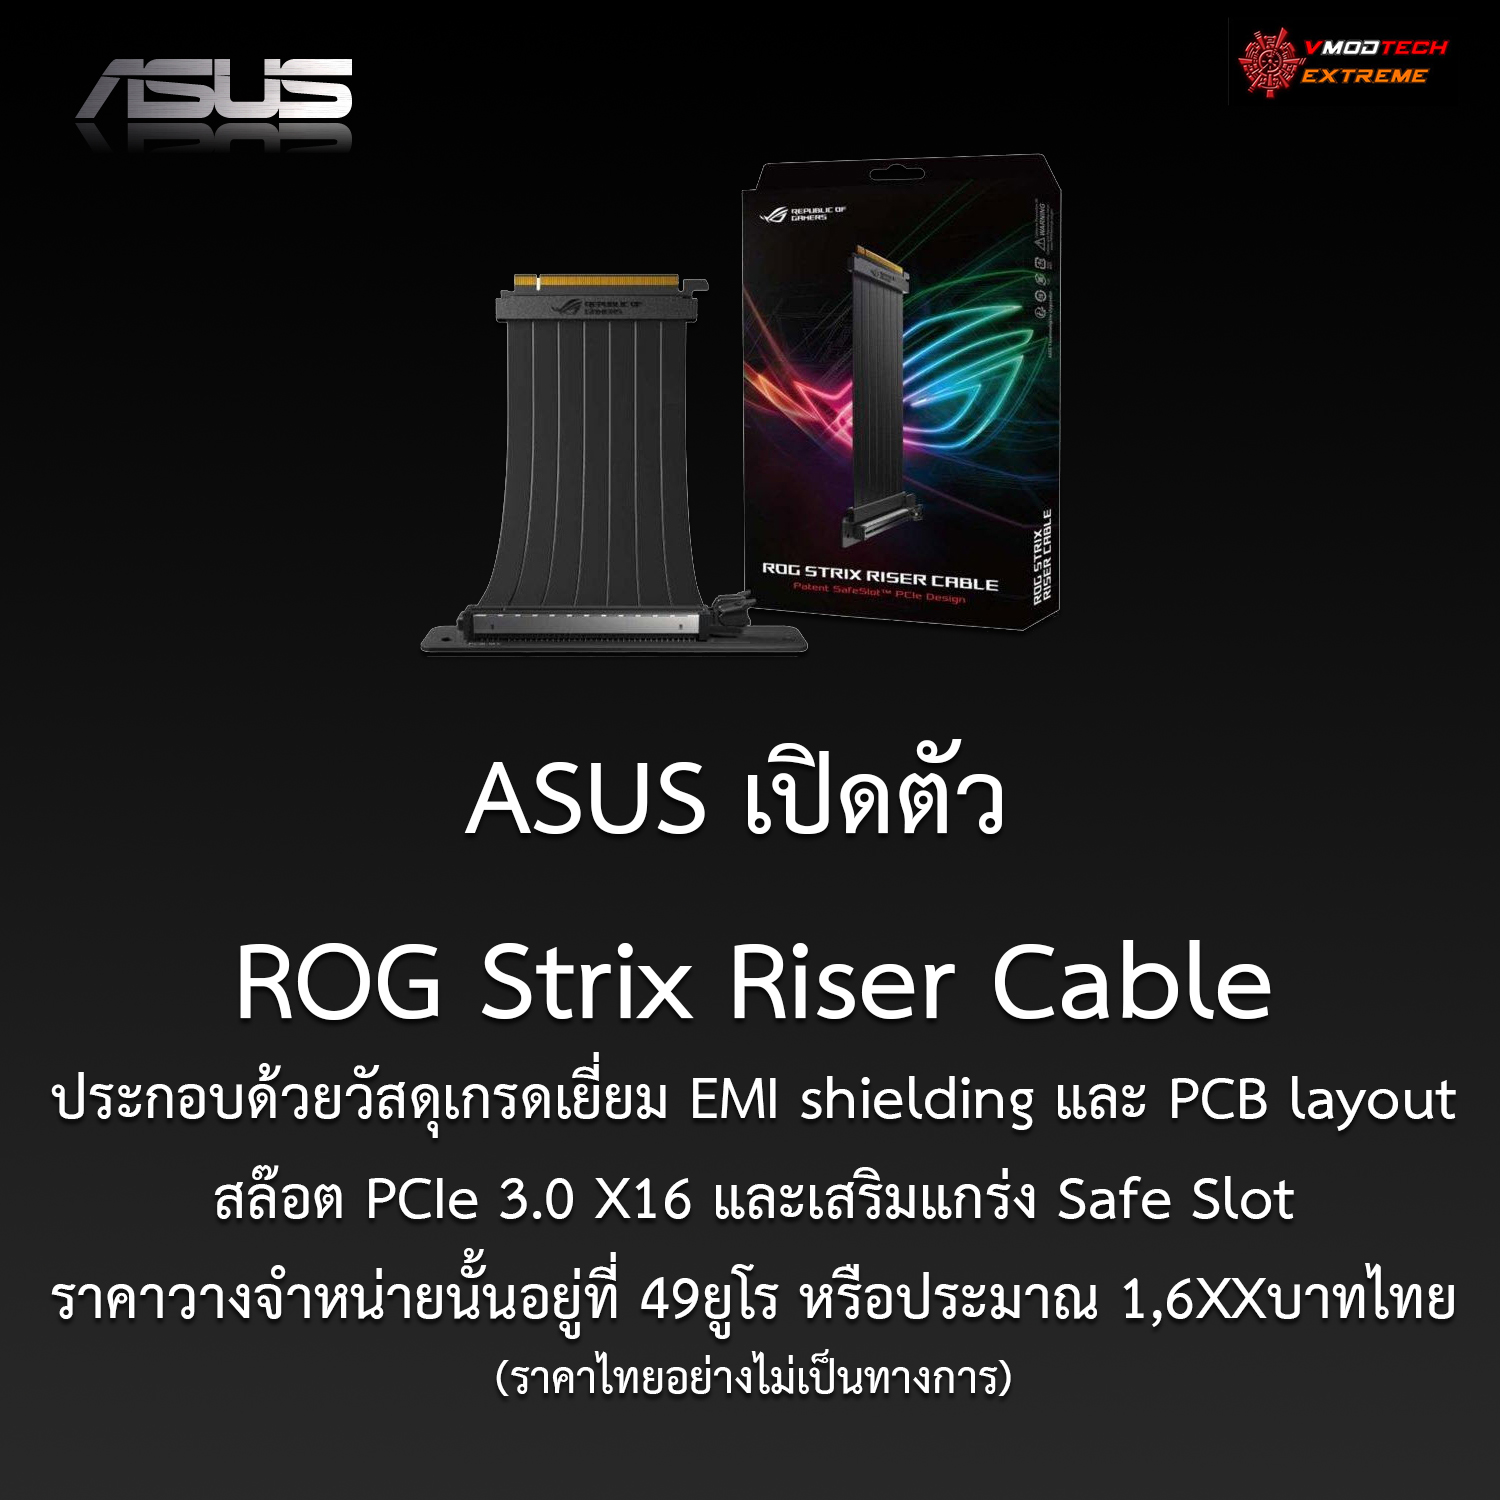 rog strix riser cable ASUS เปิดตัว ROG Strix Riser Cable เพื่อนักม๊อดตกแต่งโดยเฉพาะ!!